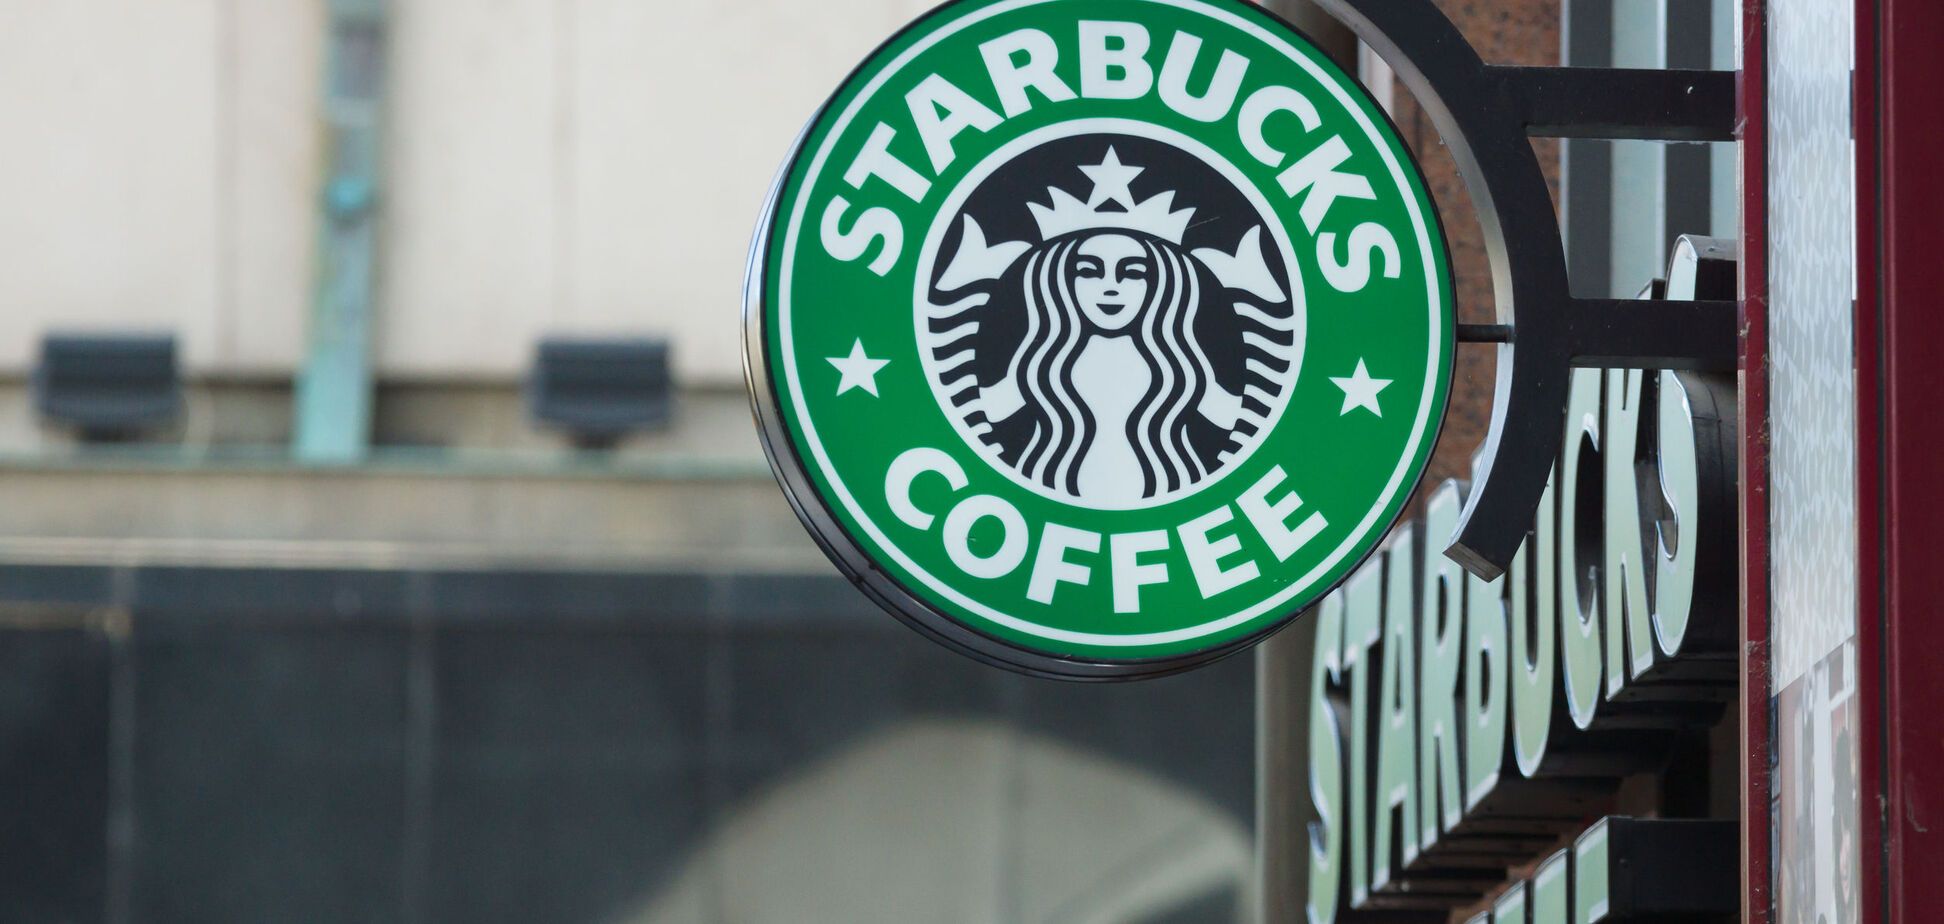 Знаменитая сеть кофеен в США попала в расистский скандал